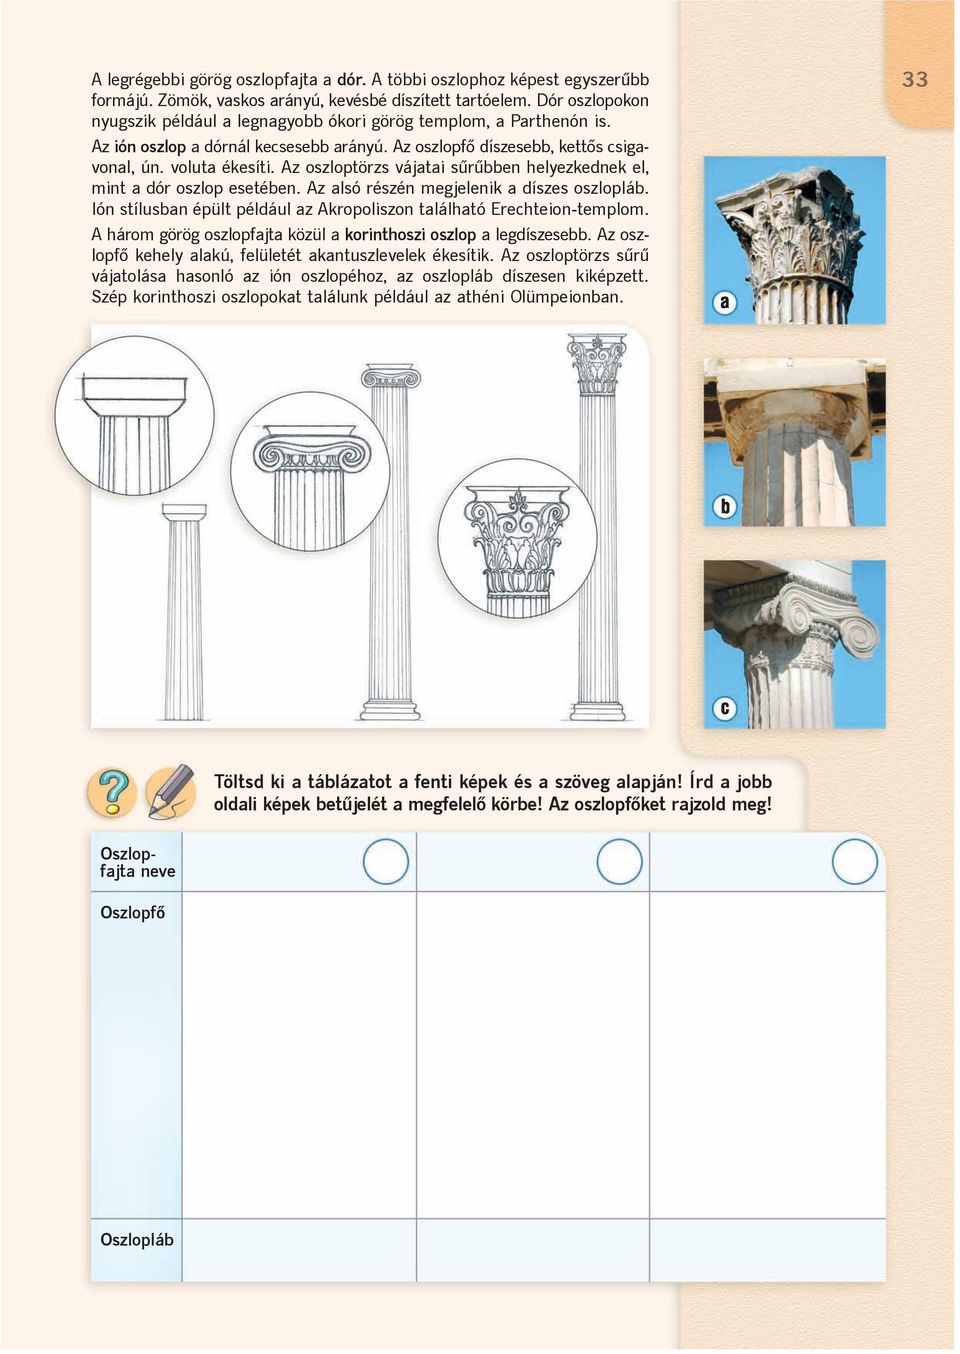 Az oszloptörzs vájatai sûrûbben helyezkednek el, mint a dór oszlop esetében. Az alsó részén megjelenik a díszes oszlopláb. Ión stílusban épült például az Akropoliszon található Erechteion-templom.